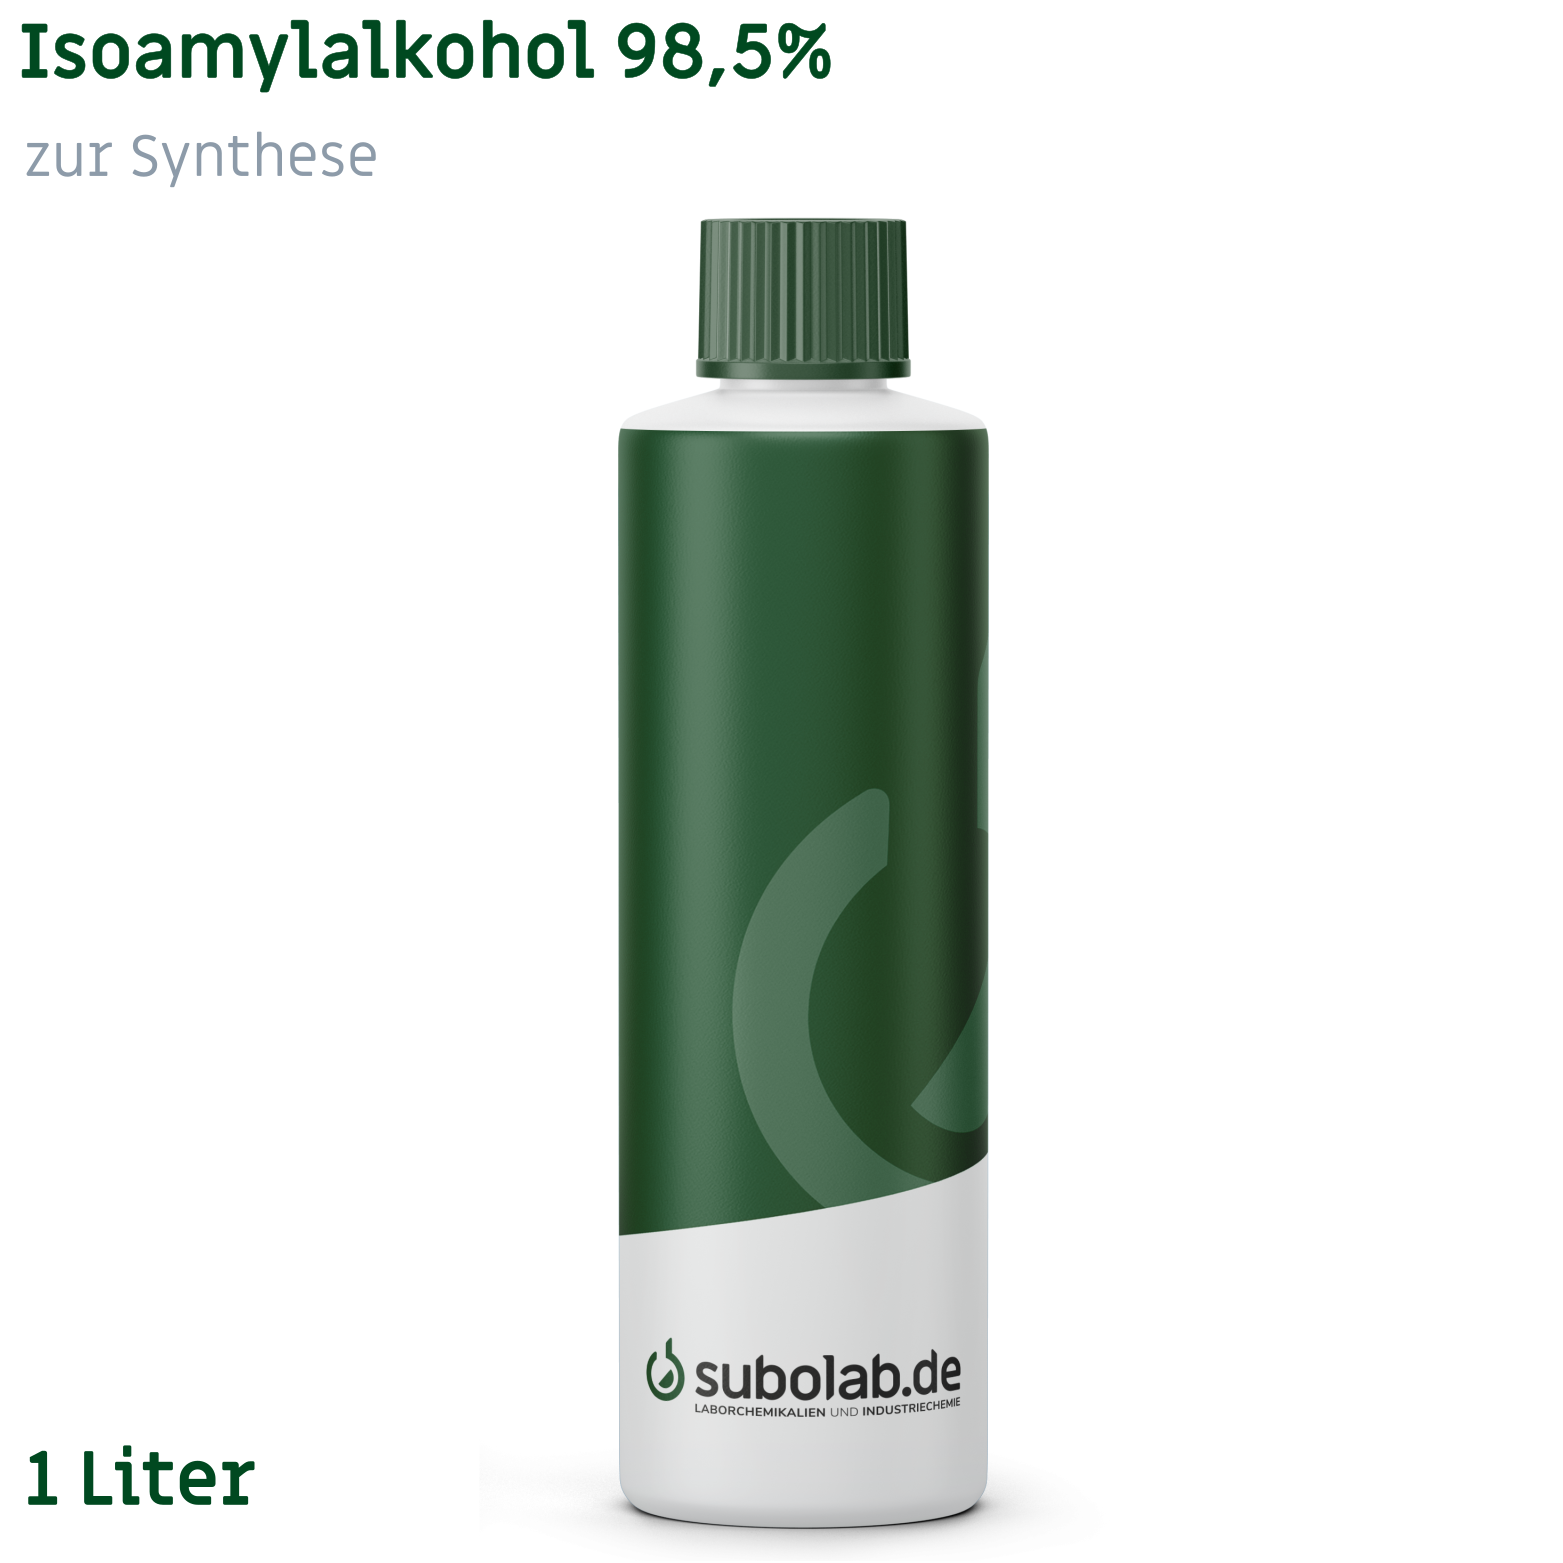 Bild von Isoamylalkohol 98,5% zur Synthese (1 Liter)